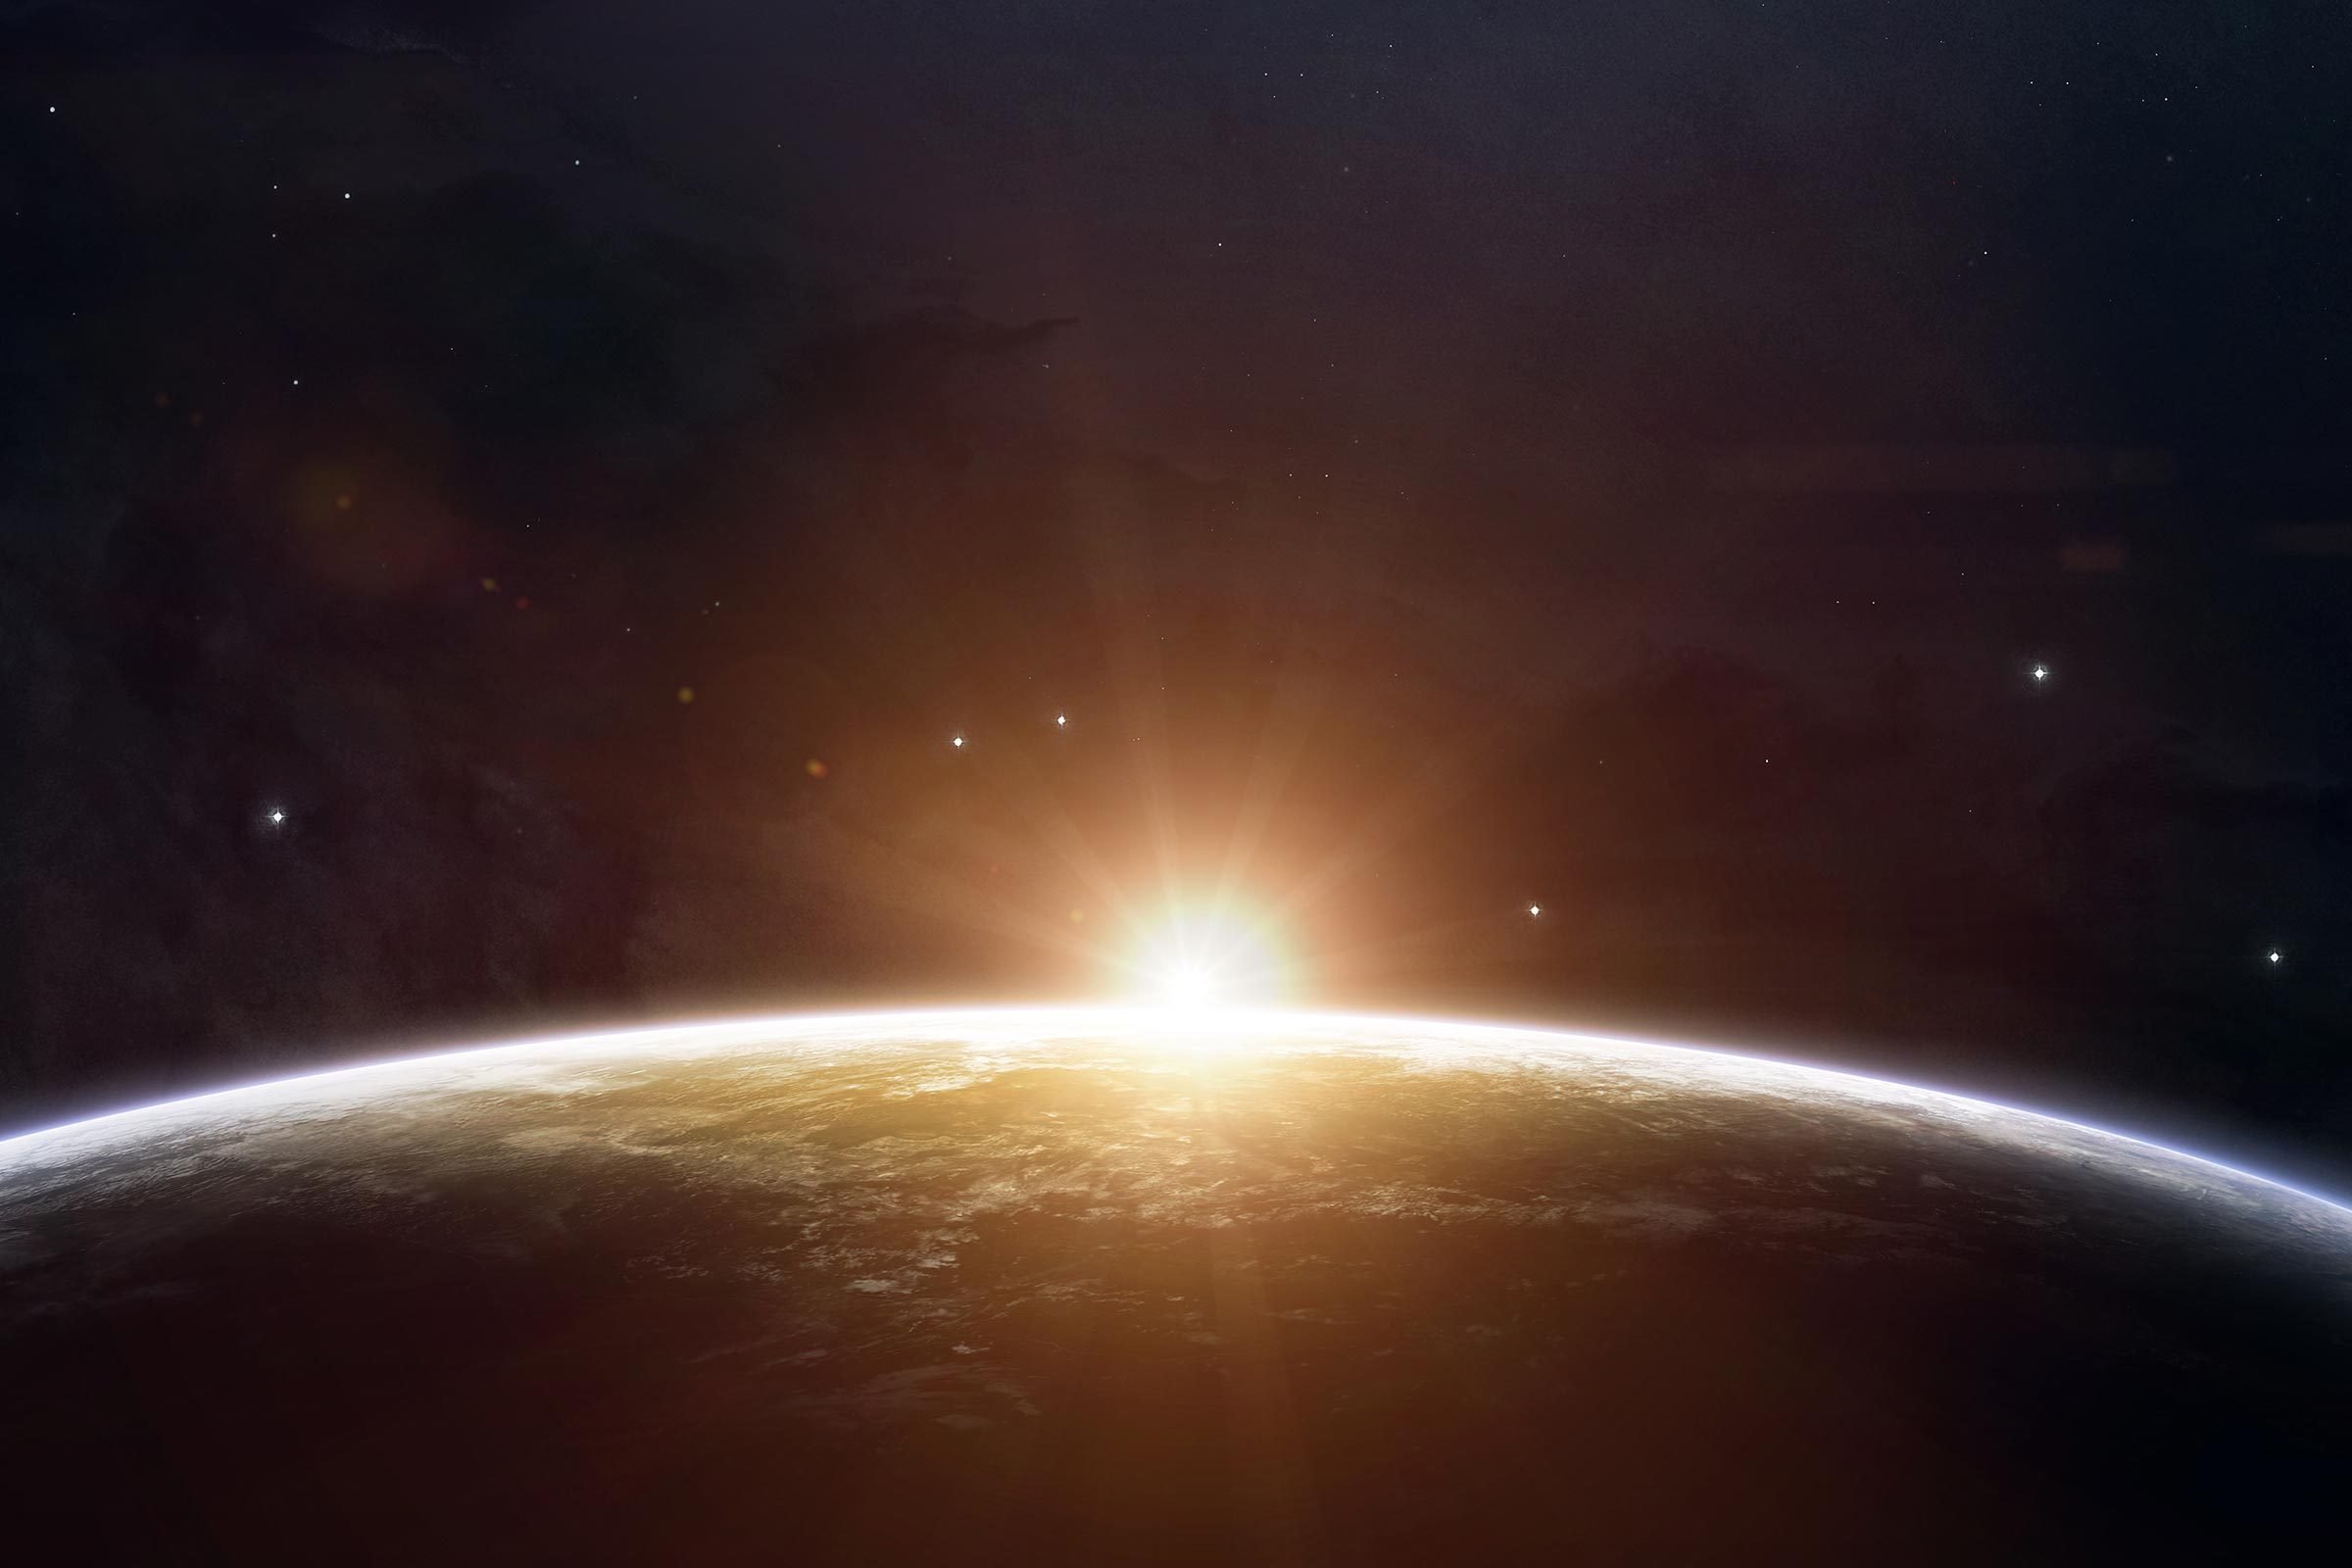 20 hechos alucinantes sobre la vida en la Estación Espacial Internacional 